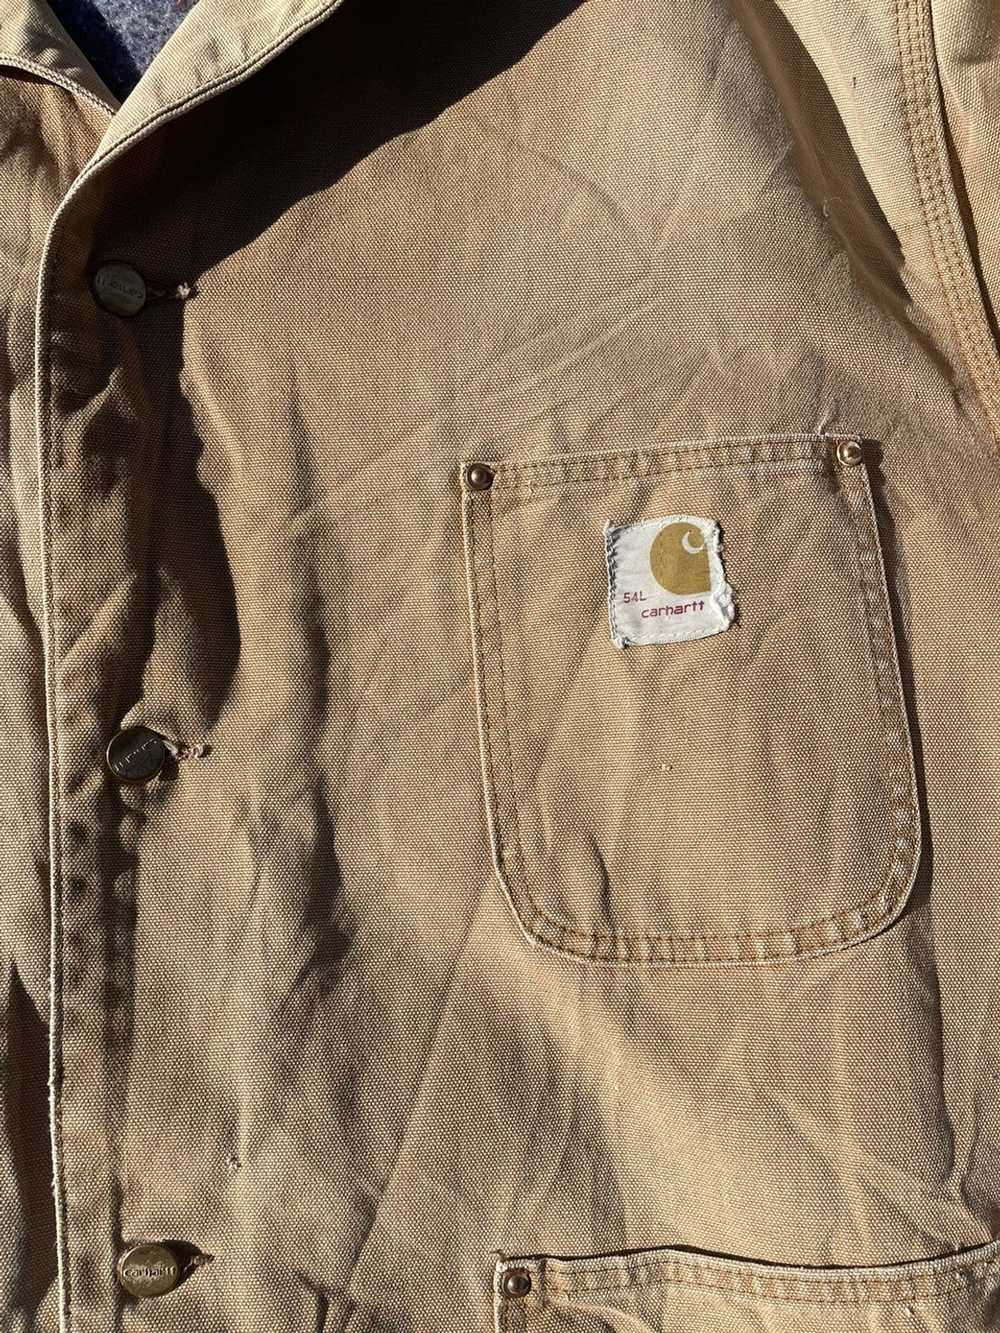 Carhartt × Vintage Vintage Carhartt Chore Jacket - image 3